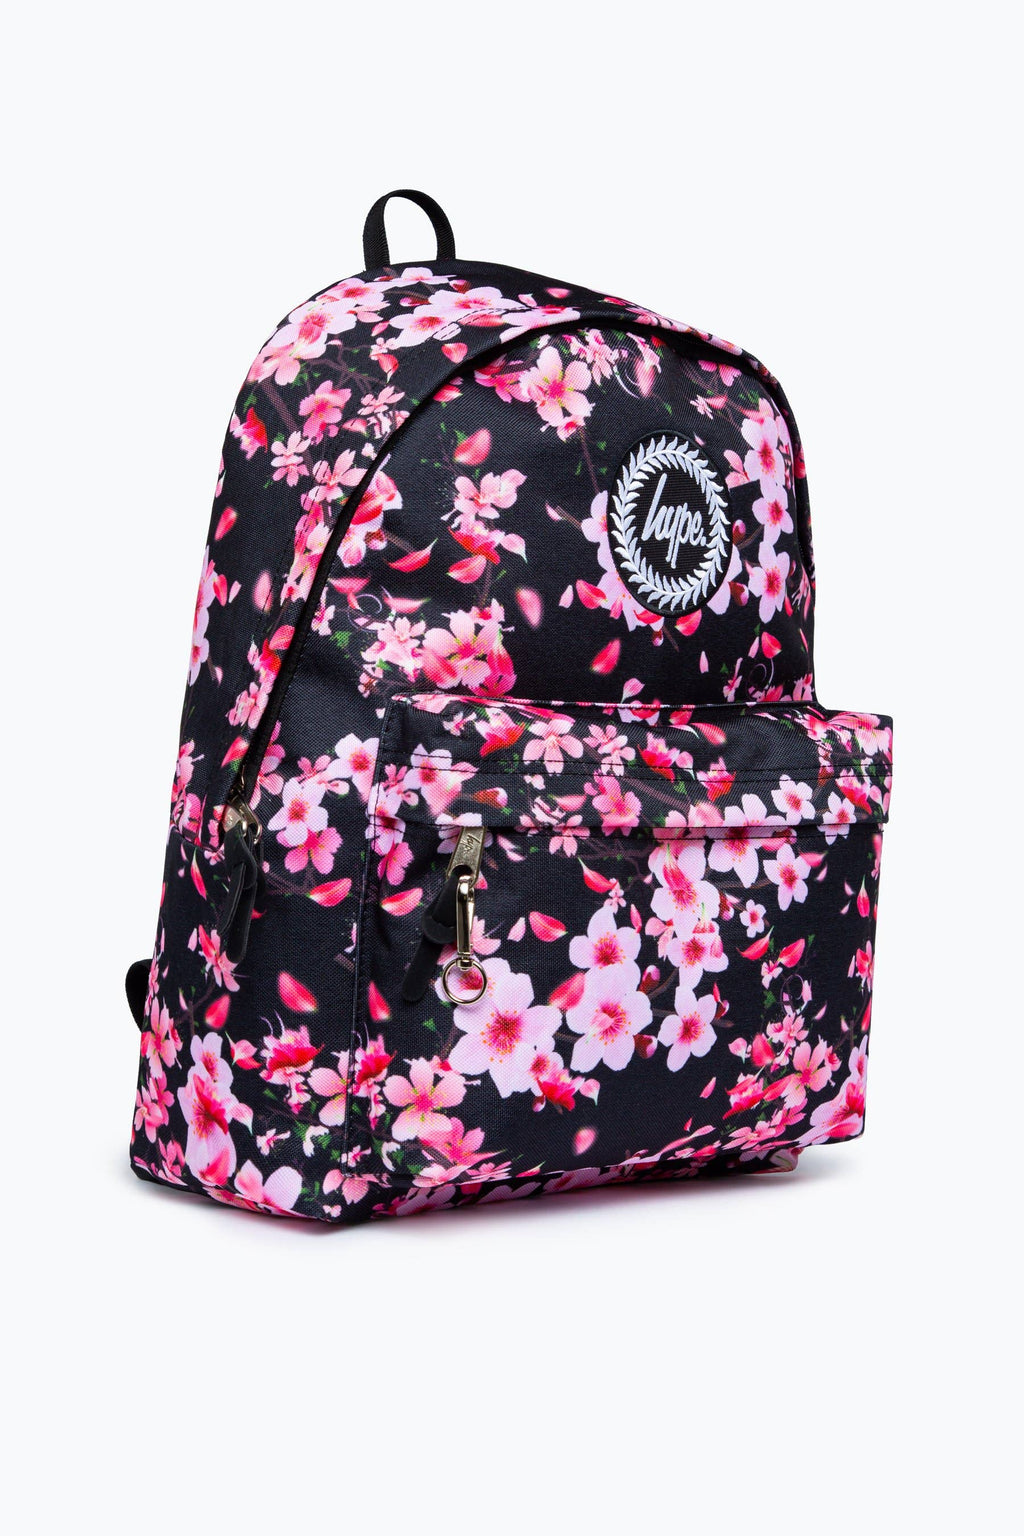 Dark Floral Backpack